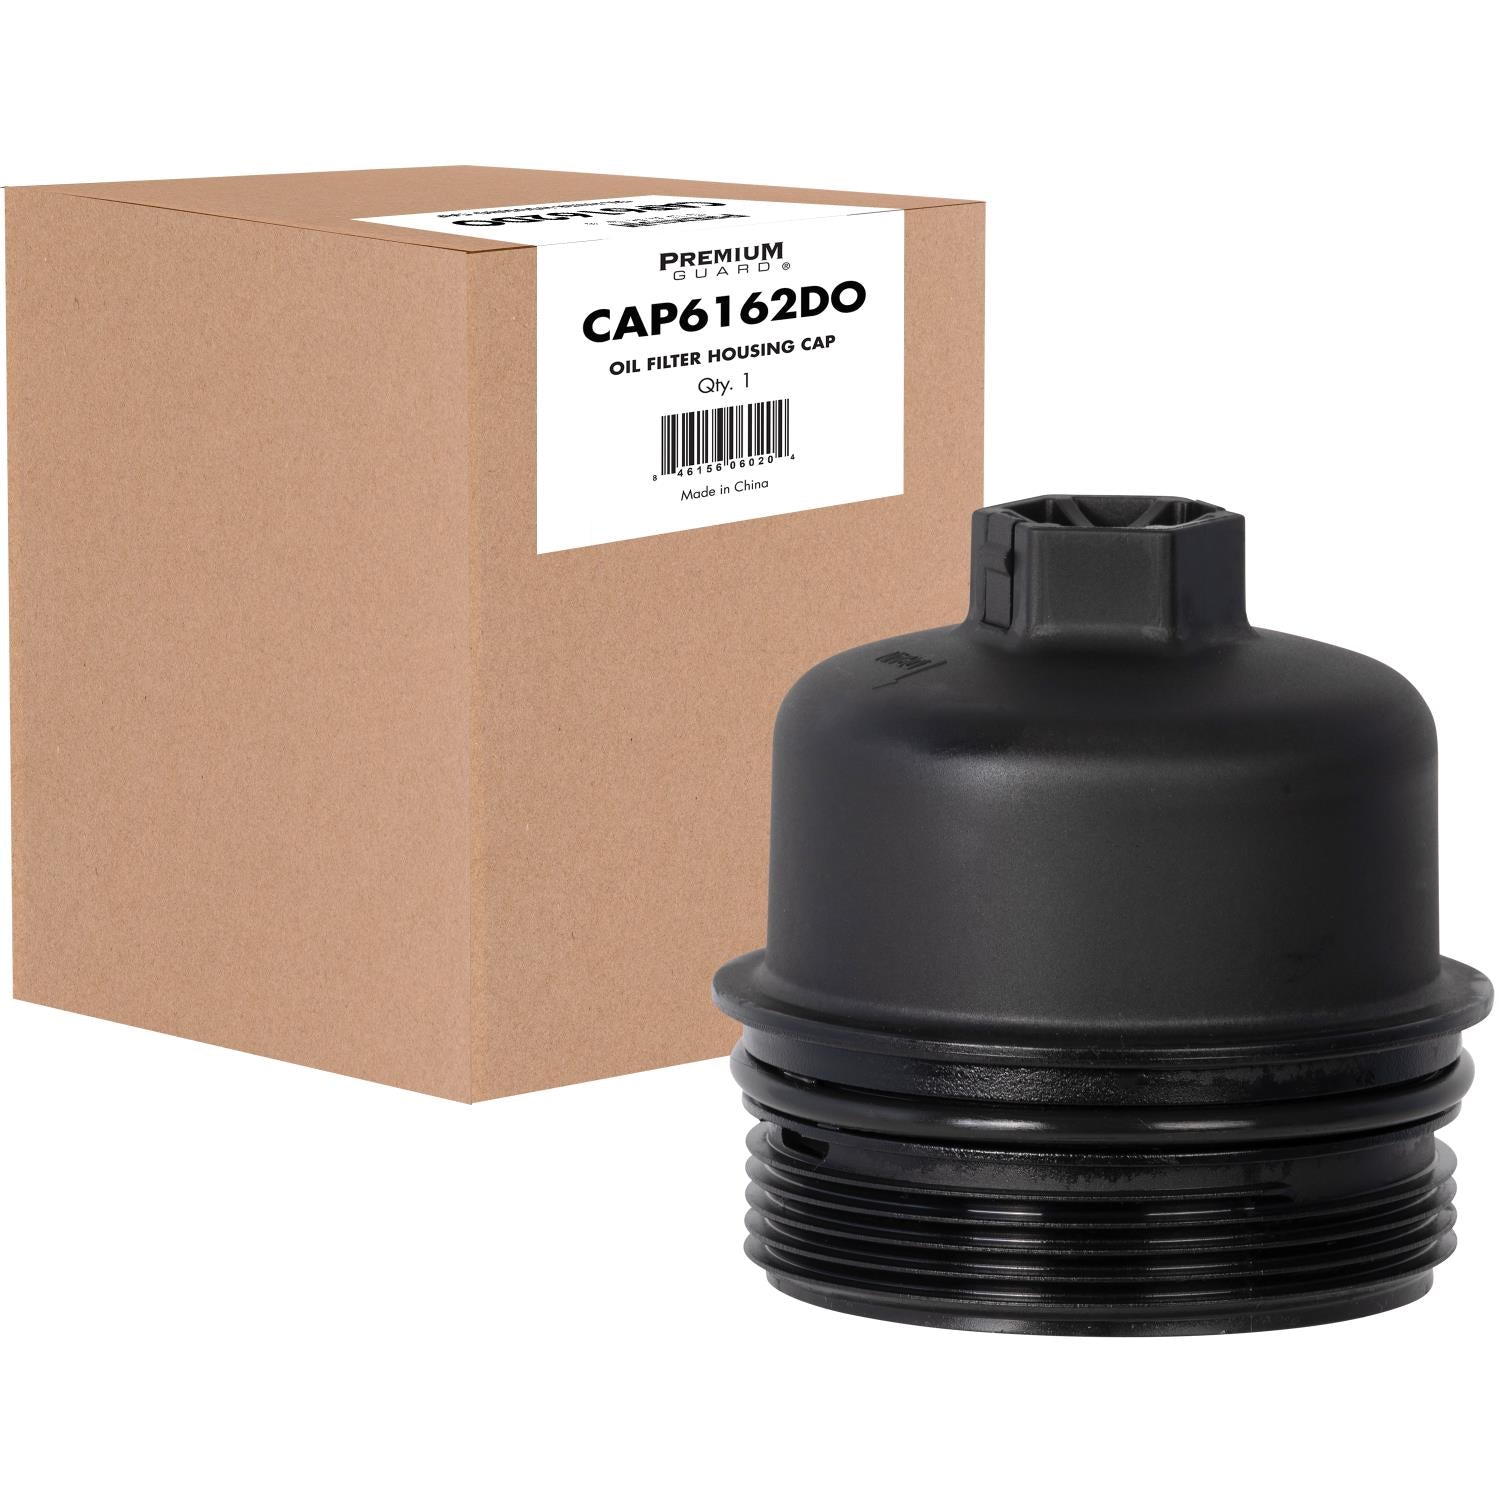 Oil Filter Housing Cap CAP6162DO